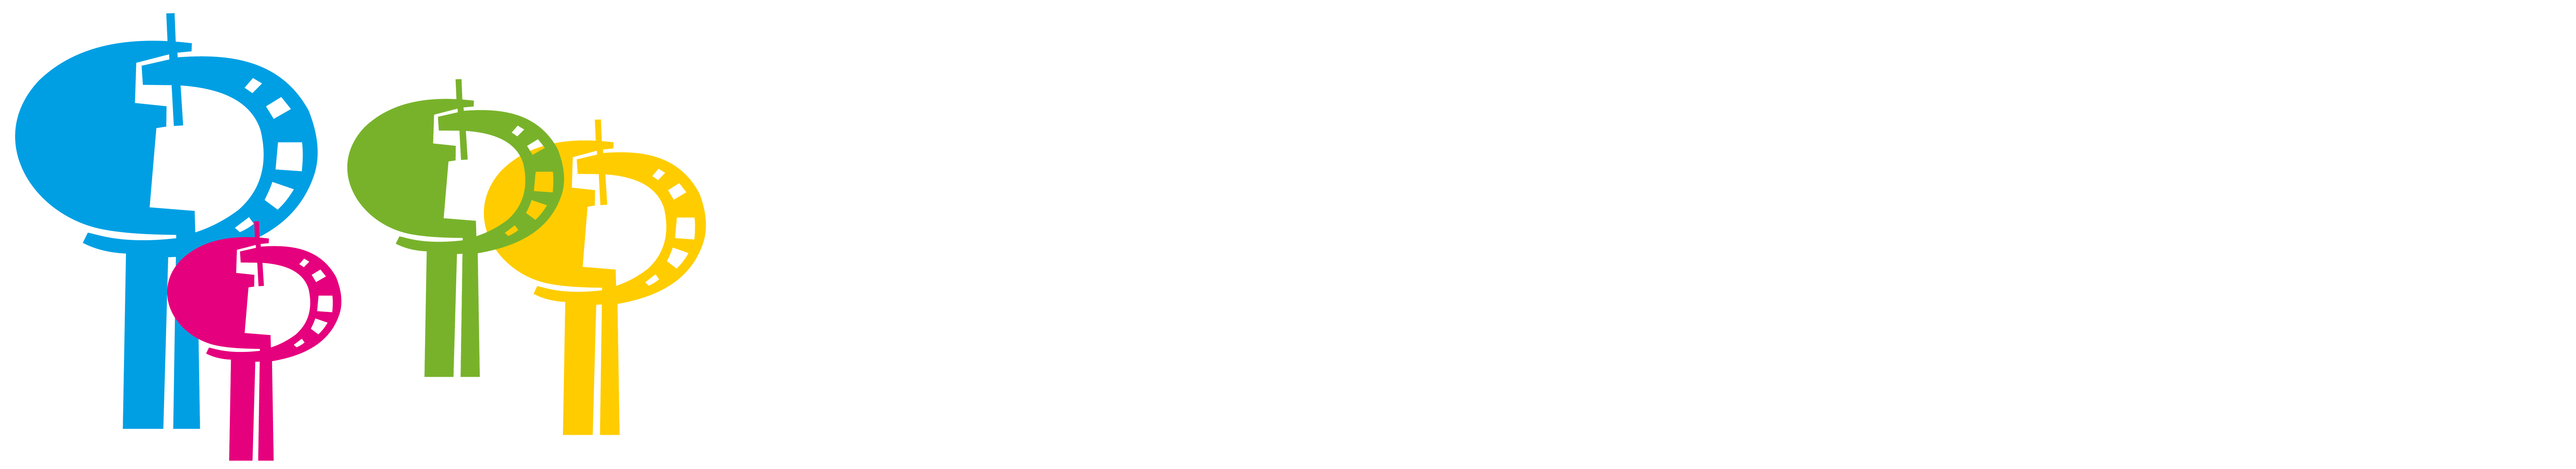 Festival de Cine Punta del Este